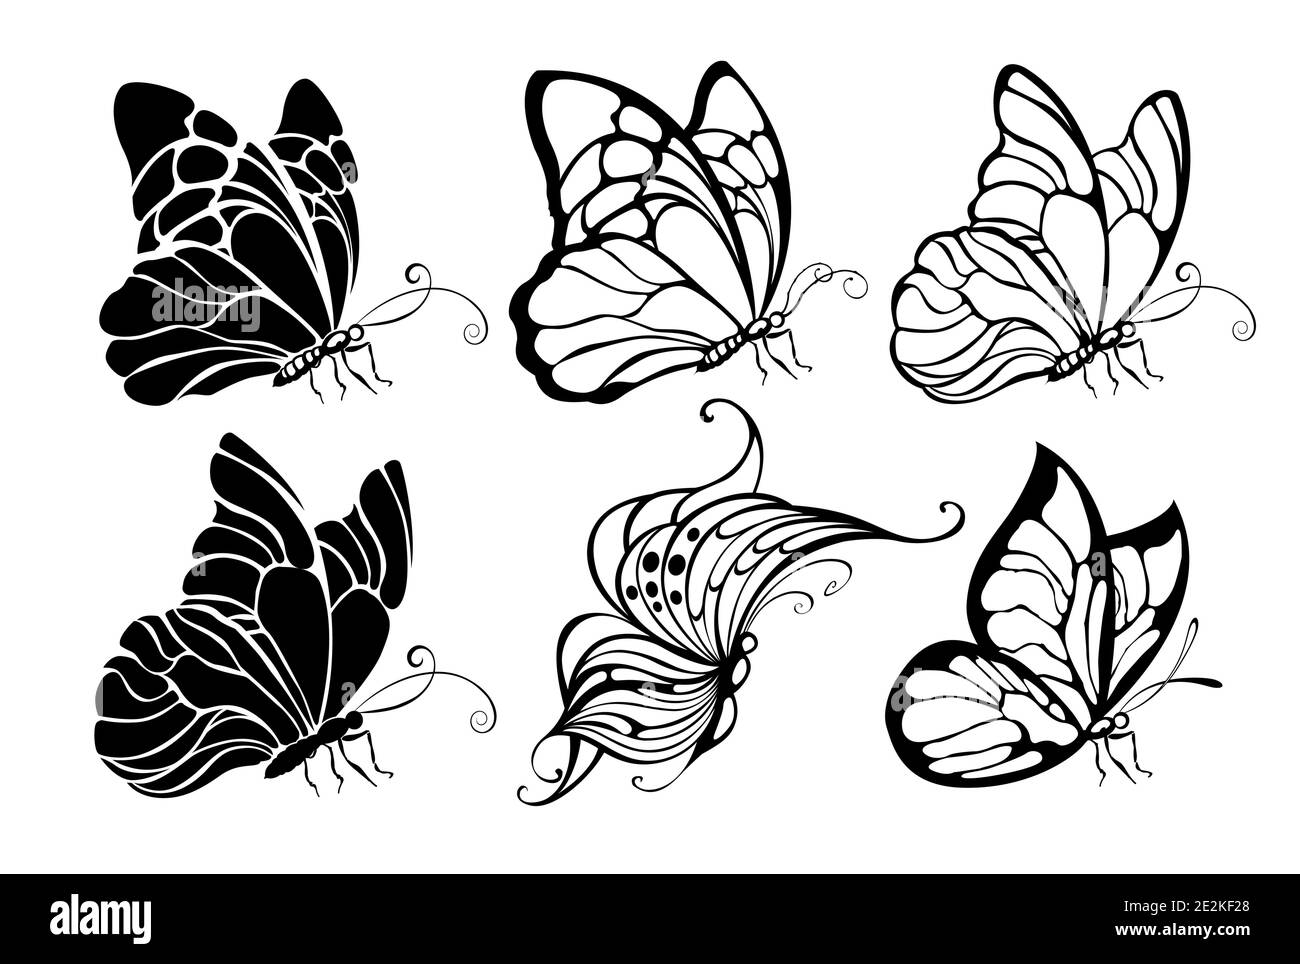 Définir des papillons dessinés artistiquement, contourés, assis, noirs sur fond blanc. Papillons. Elément de conception. Illustration de Vecteur